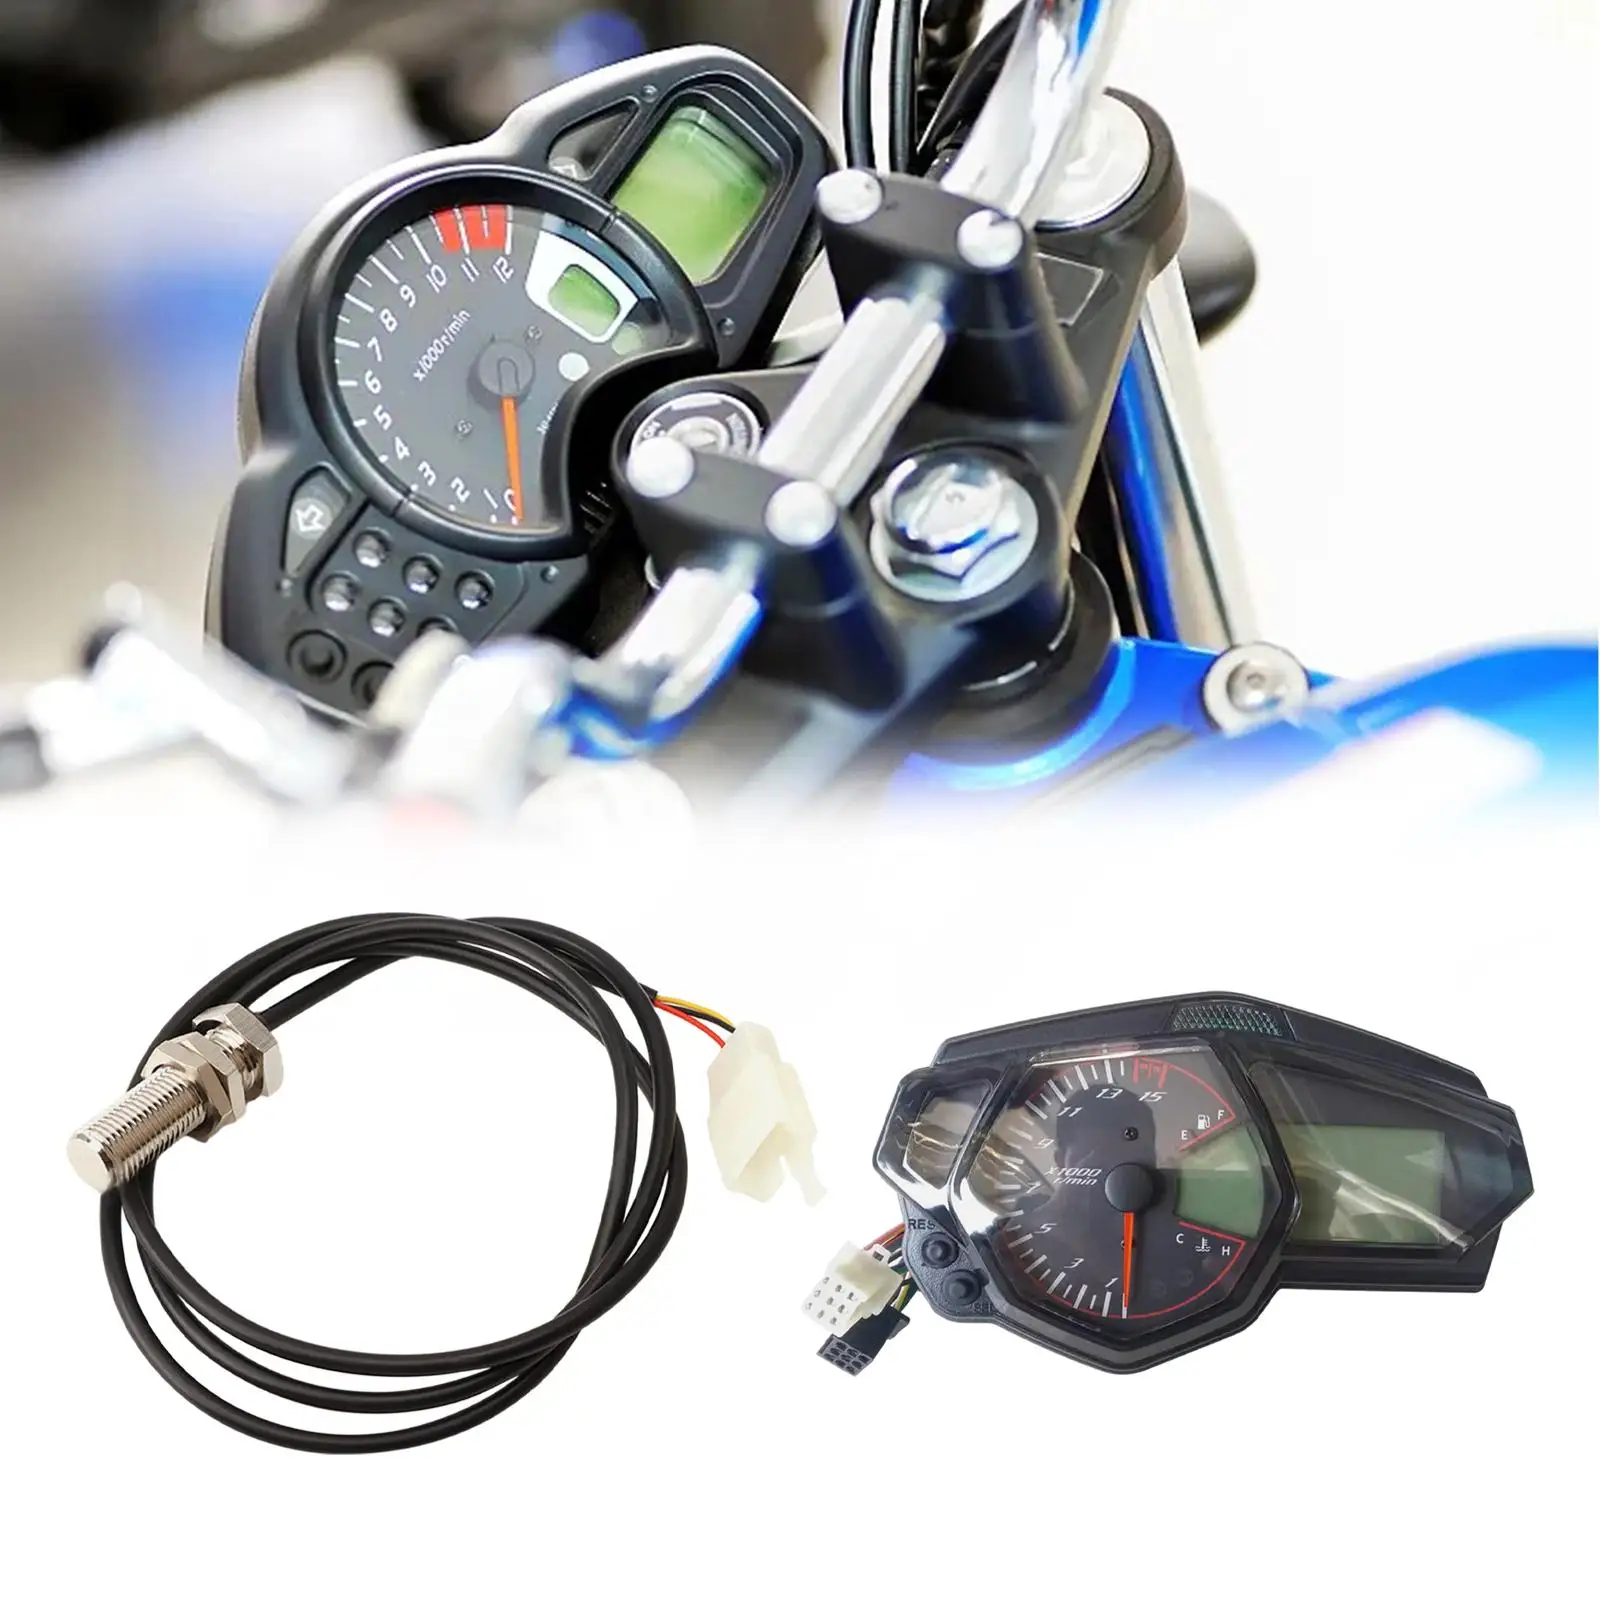 Motorcycle Speedometer Tachometer Fuel Level Display Odometer LCD Digital Gauge